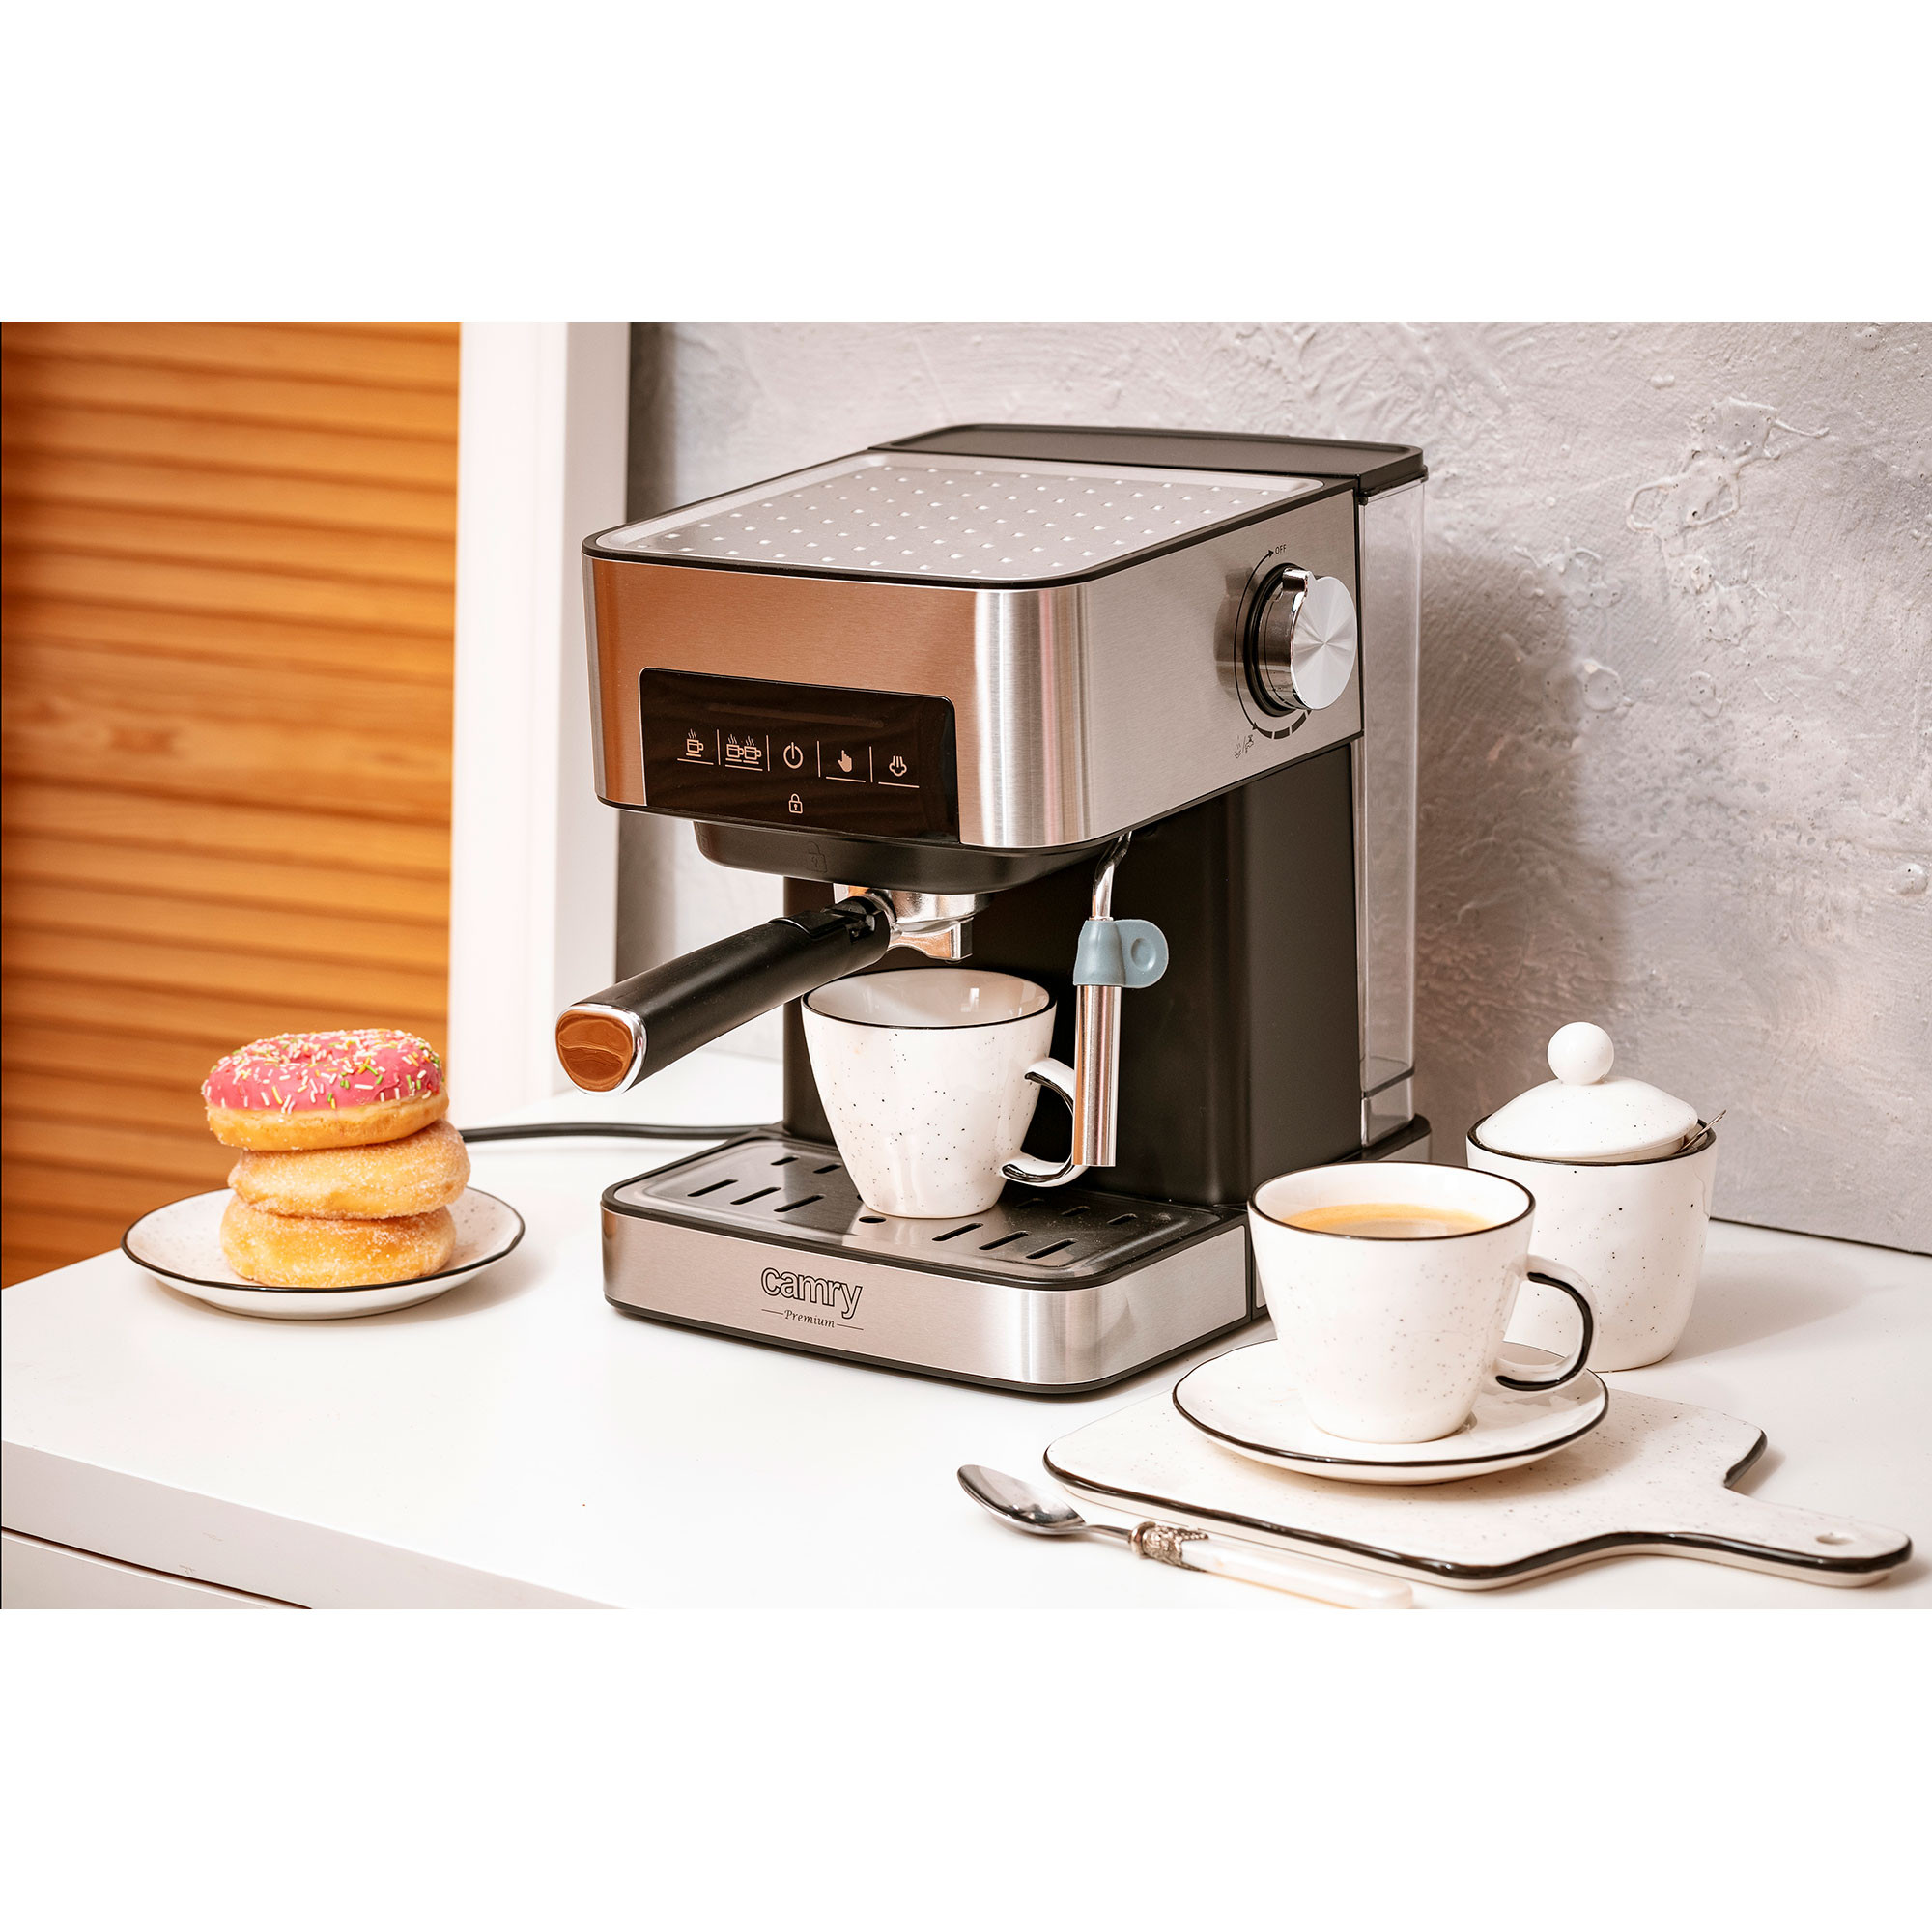 Cafetera Expresso con 2 salidas de café y función de calentar/espumar la  leche, apta para café molido y cápsulas Lacor.